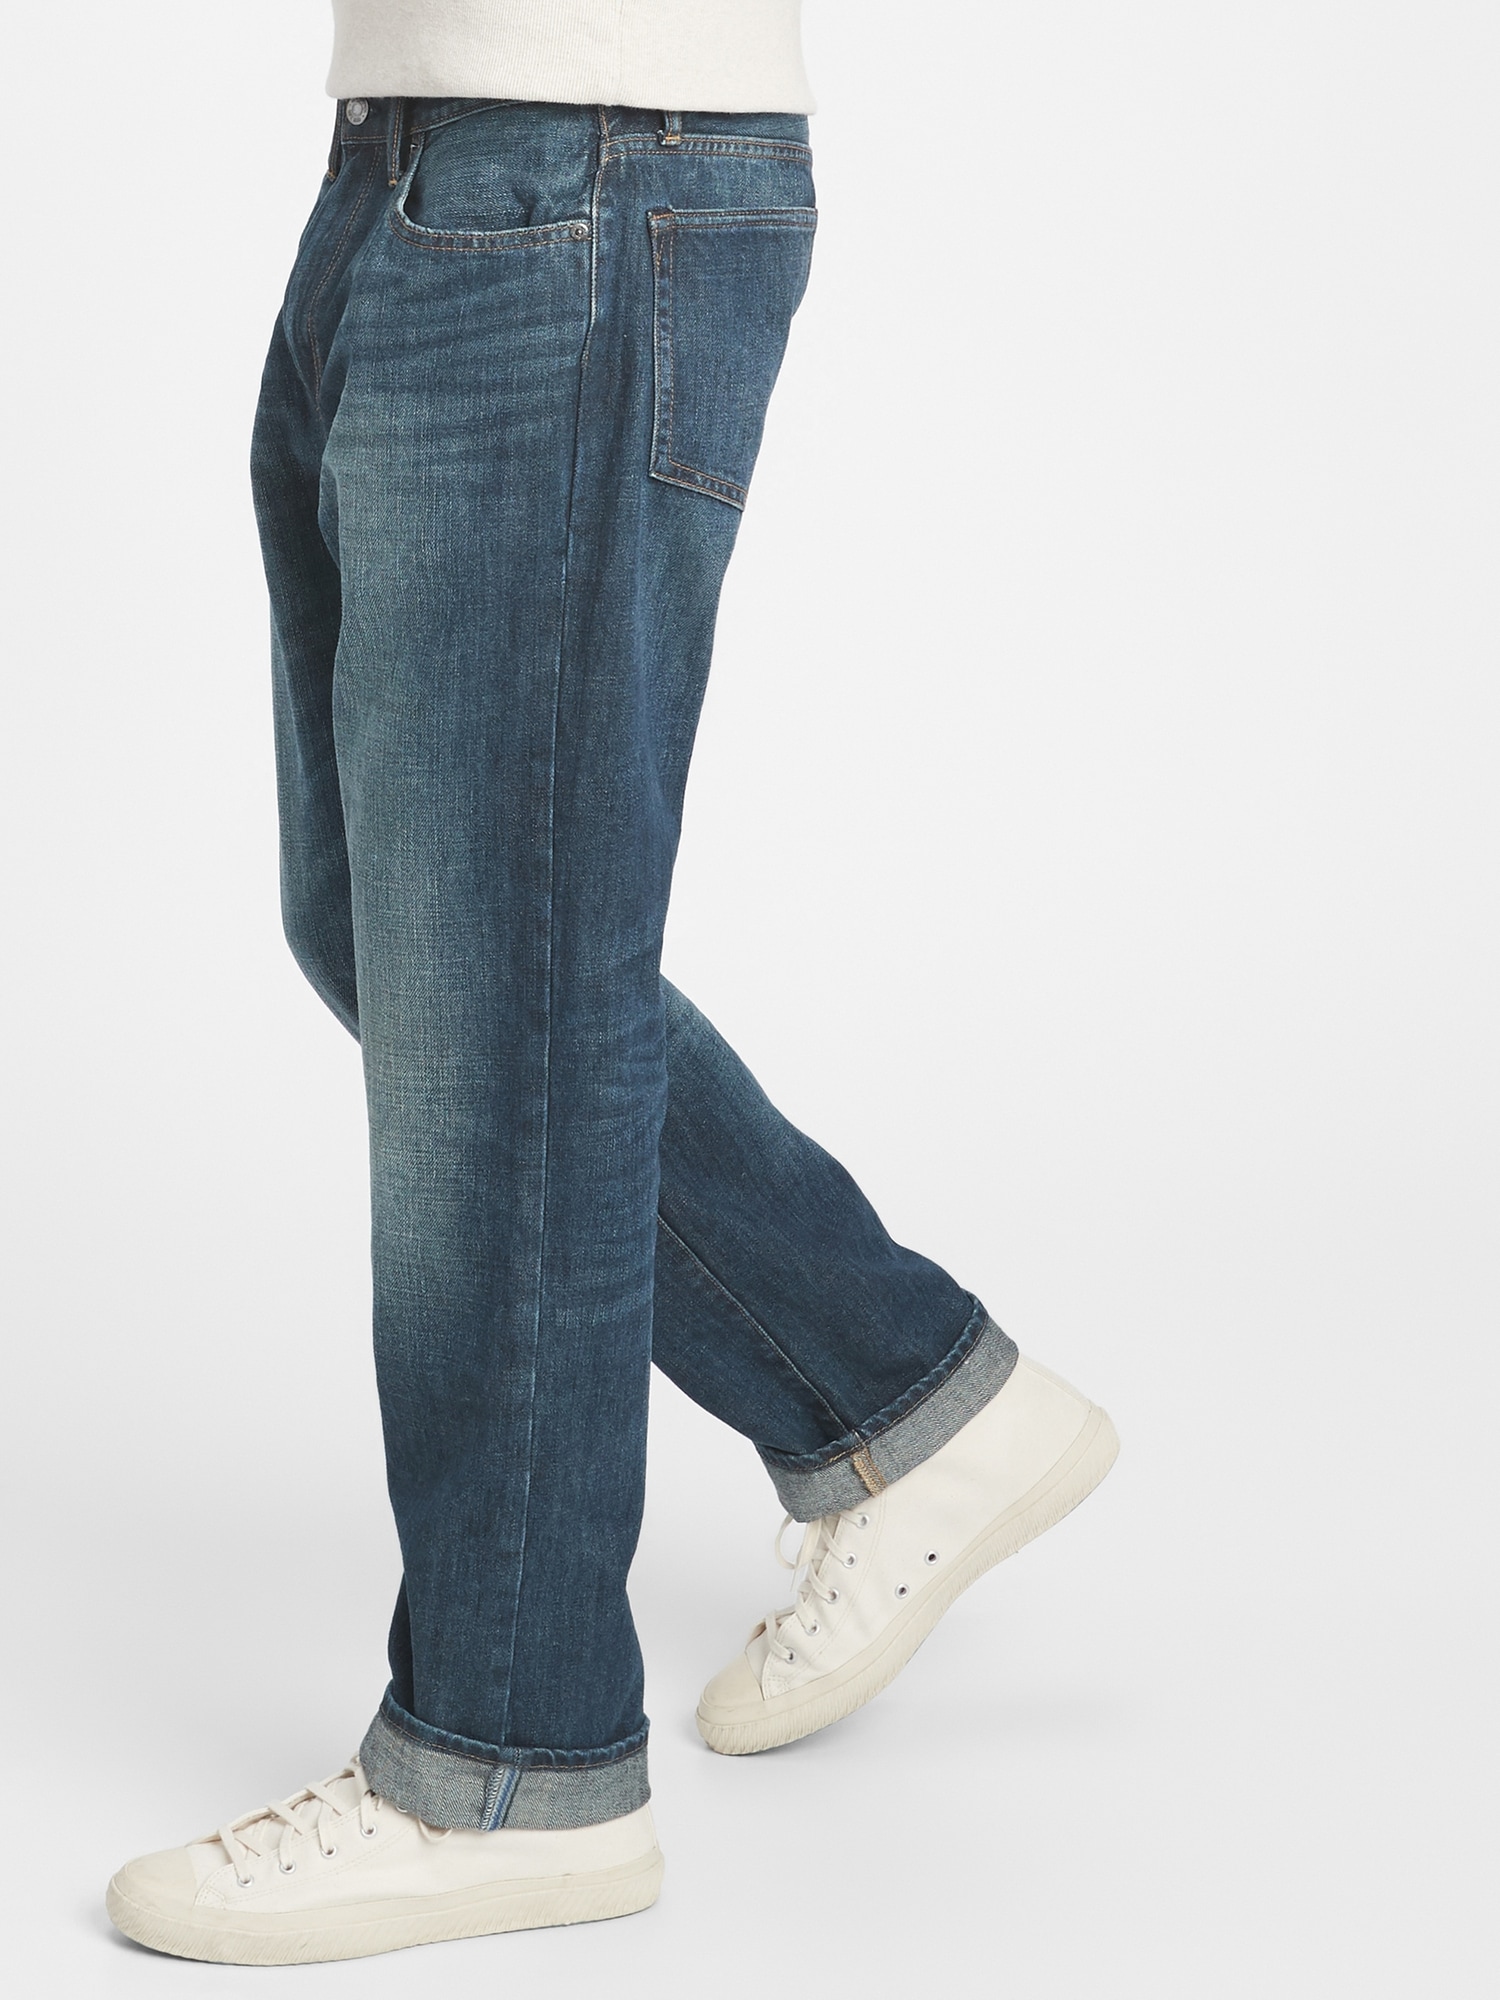 Gap 1969 Selvedge Slim Fit Jeans, $128, Gap